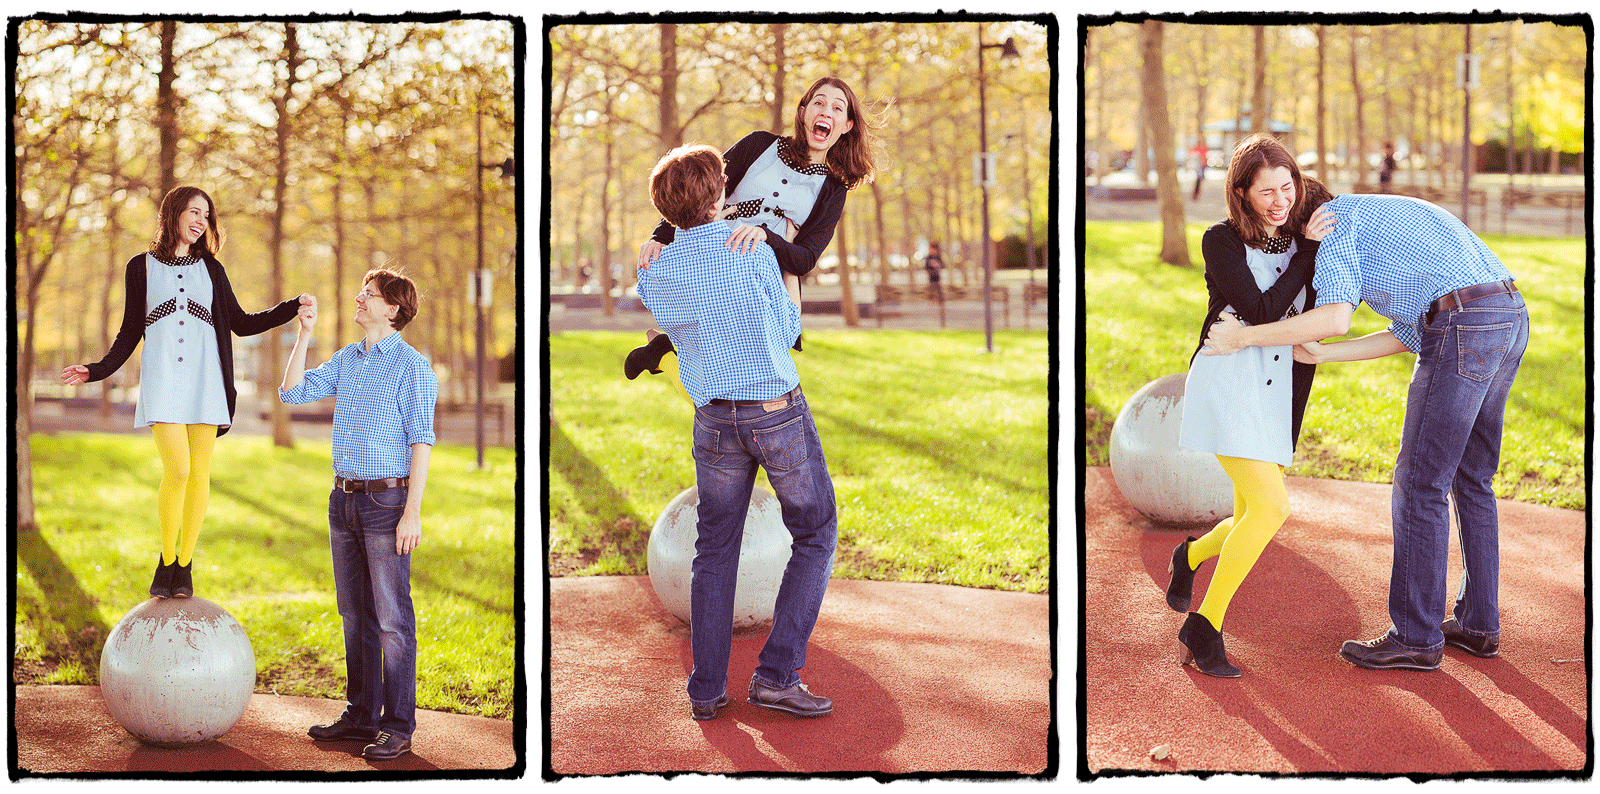 Engagement Portraits: Lauren & Dano goof around in Hoboken, New Jersey.